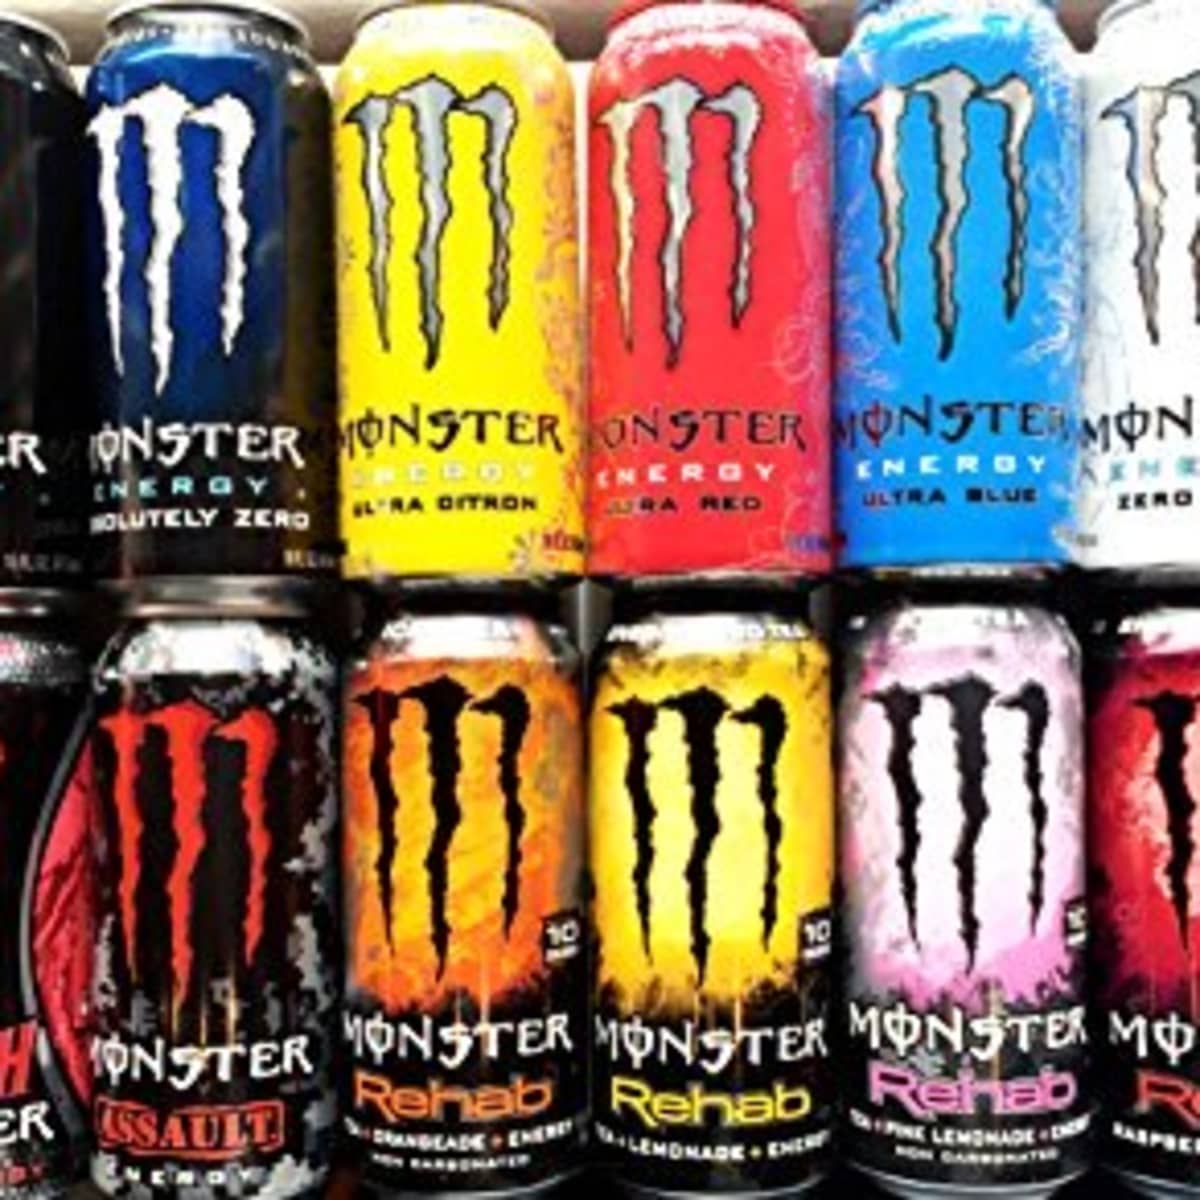 best tasting energy drink powder